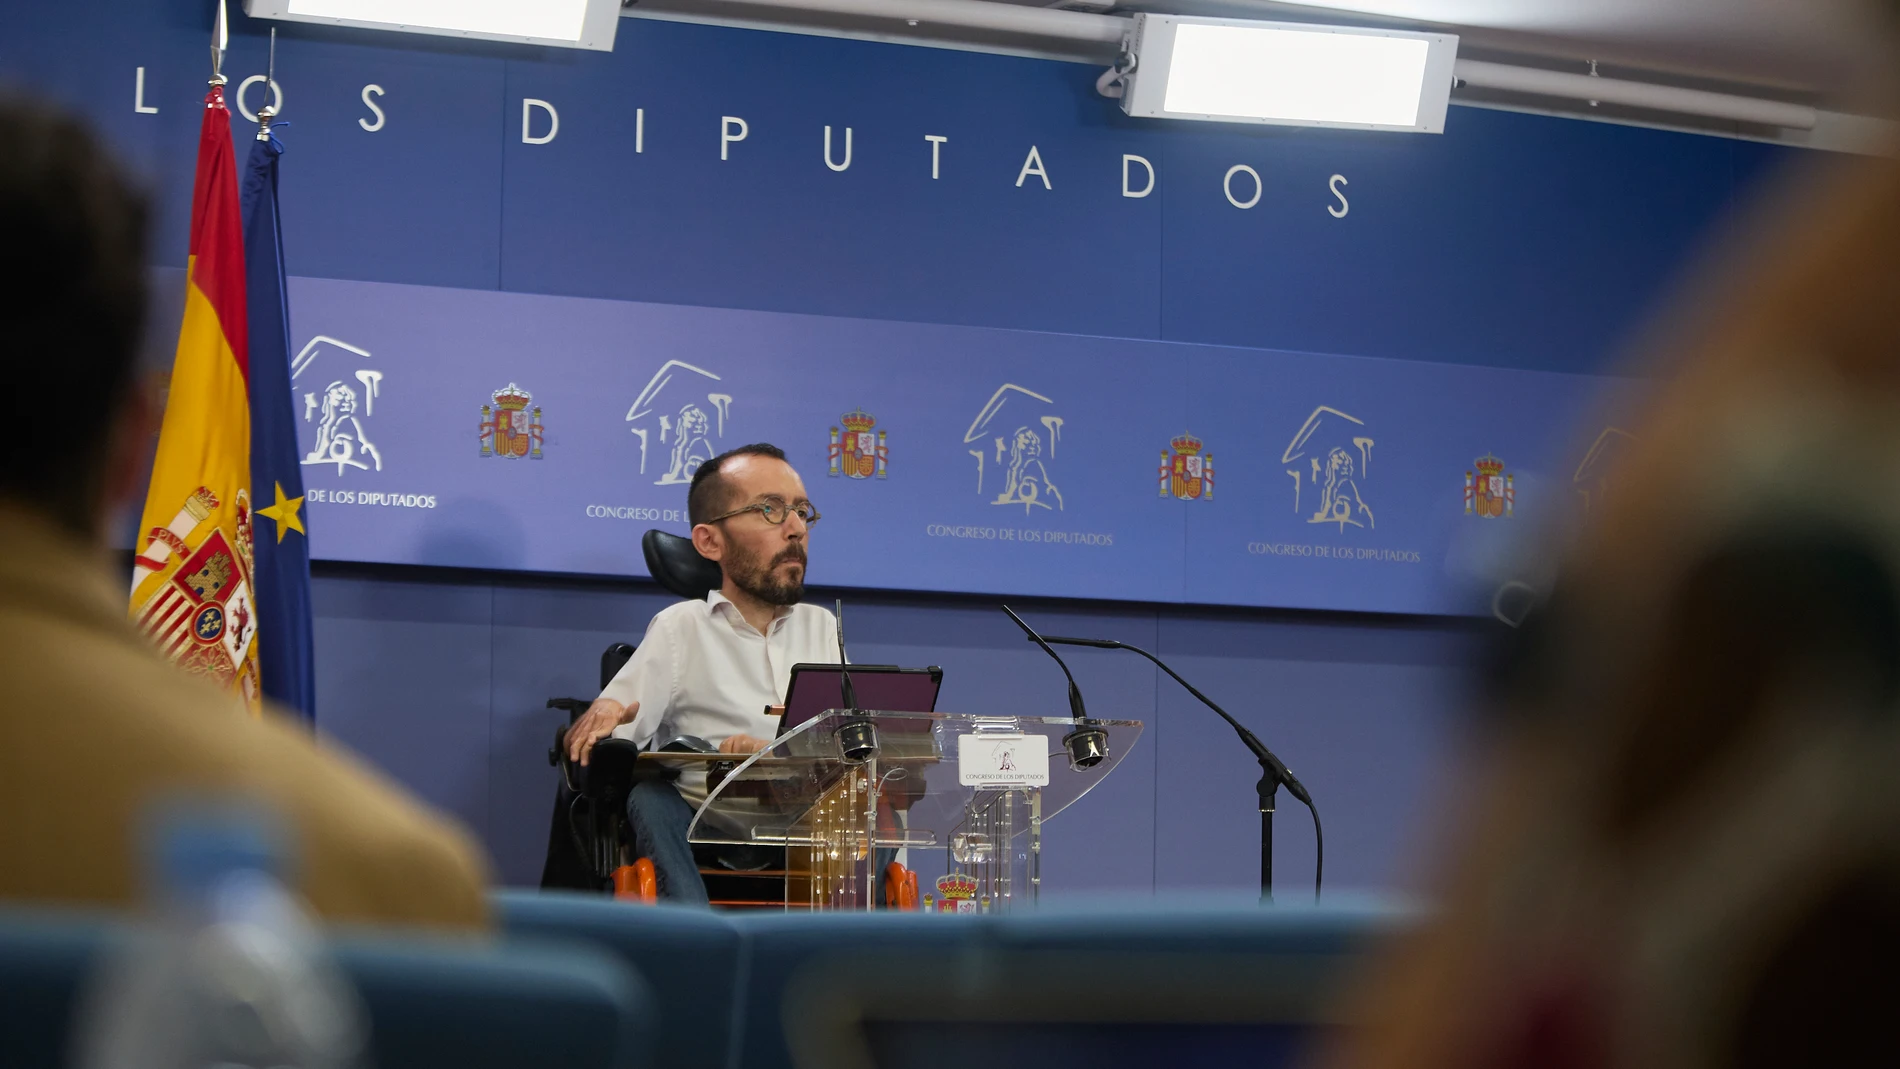 El portavoz de Unidas Podemos en el Congreso, Pablo Echenique, interviene en una rueda de prensa anterior a una Junta de Portavoces, a 8 de junio de 2021, en la Sala Constitucional del Congreso de los Diputados, Madrid